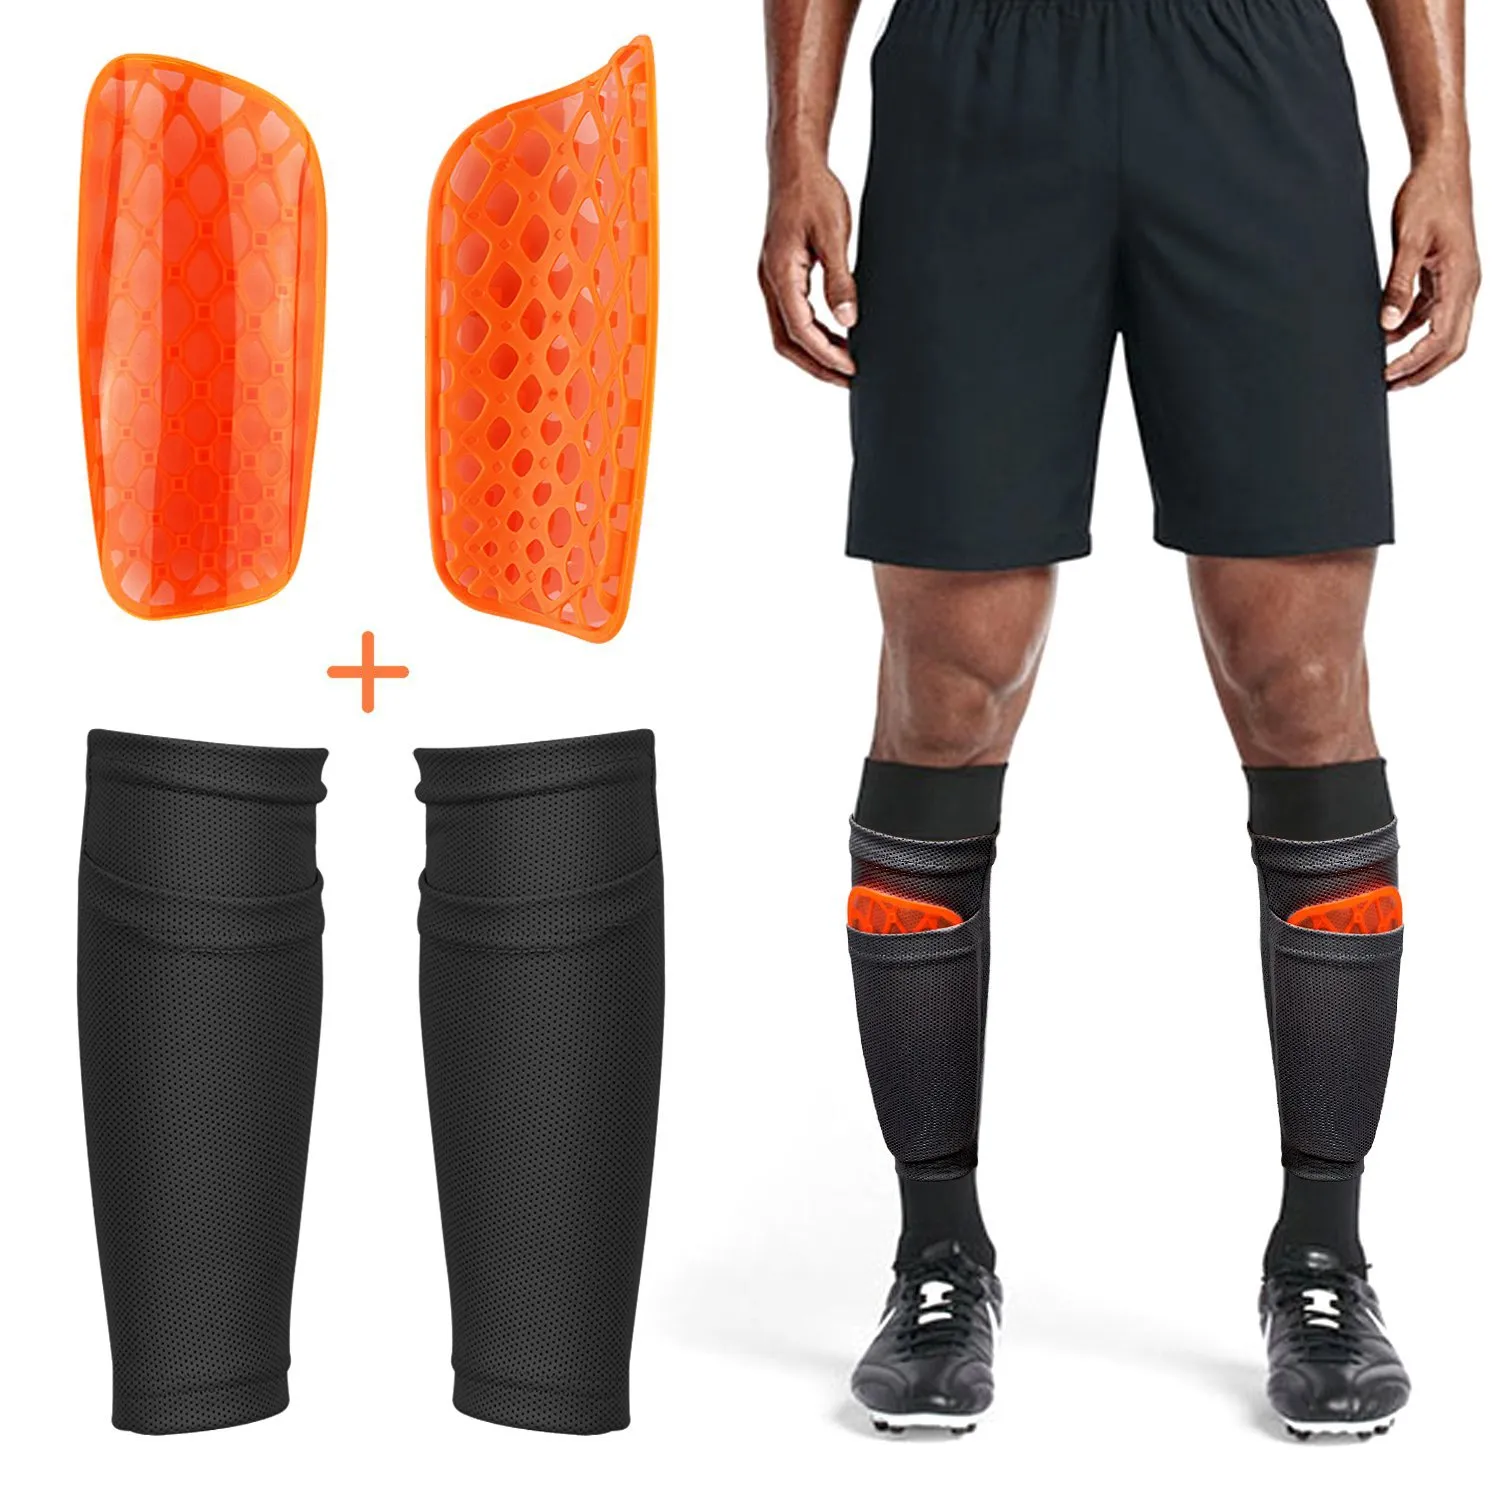 Meia para caneleira de futebol, mangas de futebol com suporte para desempenho de perna com bolso para segurar caneleiras, suportes respiráveis confortáveis + PADS